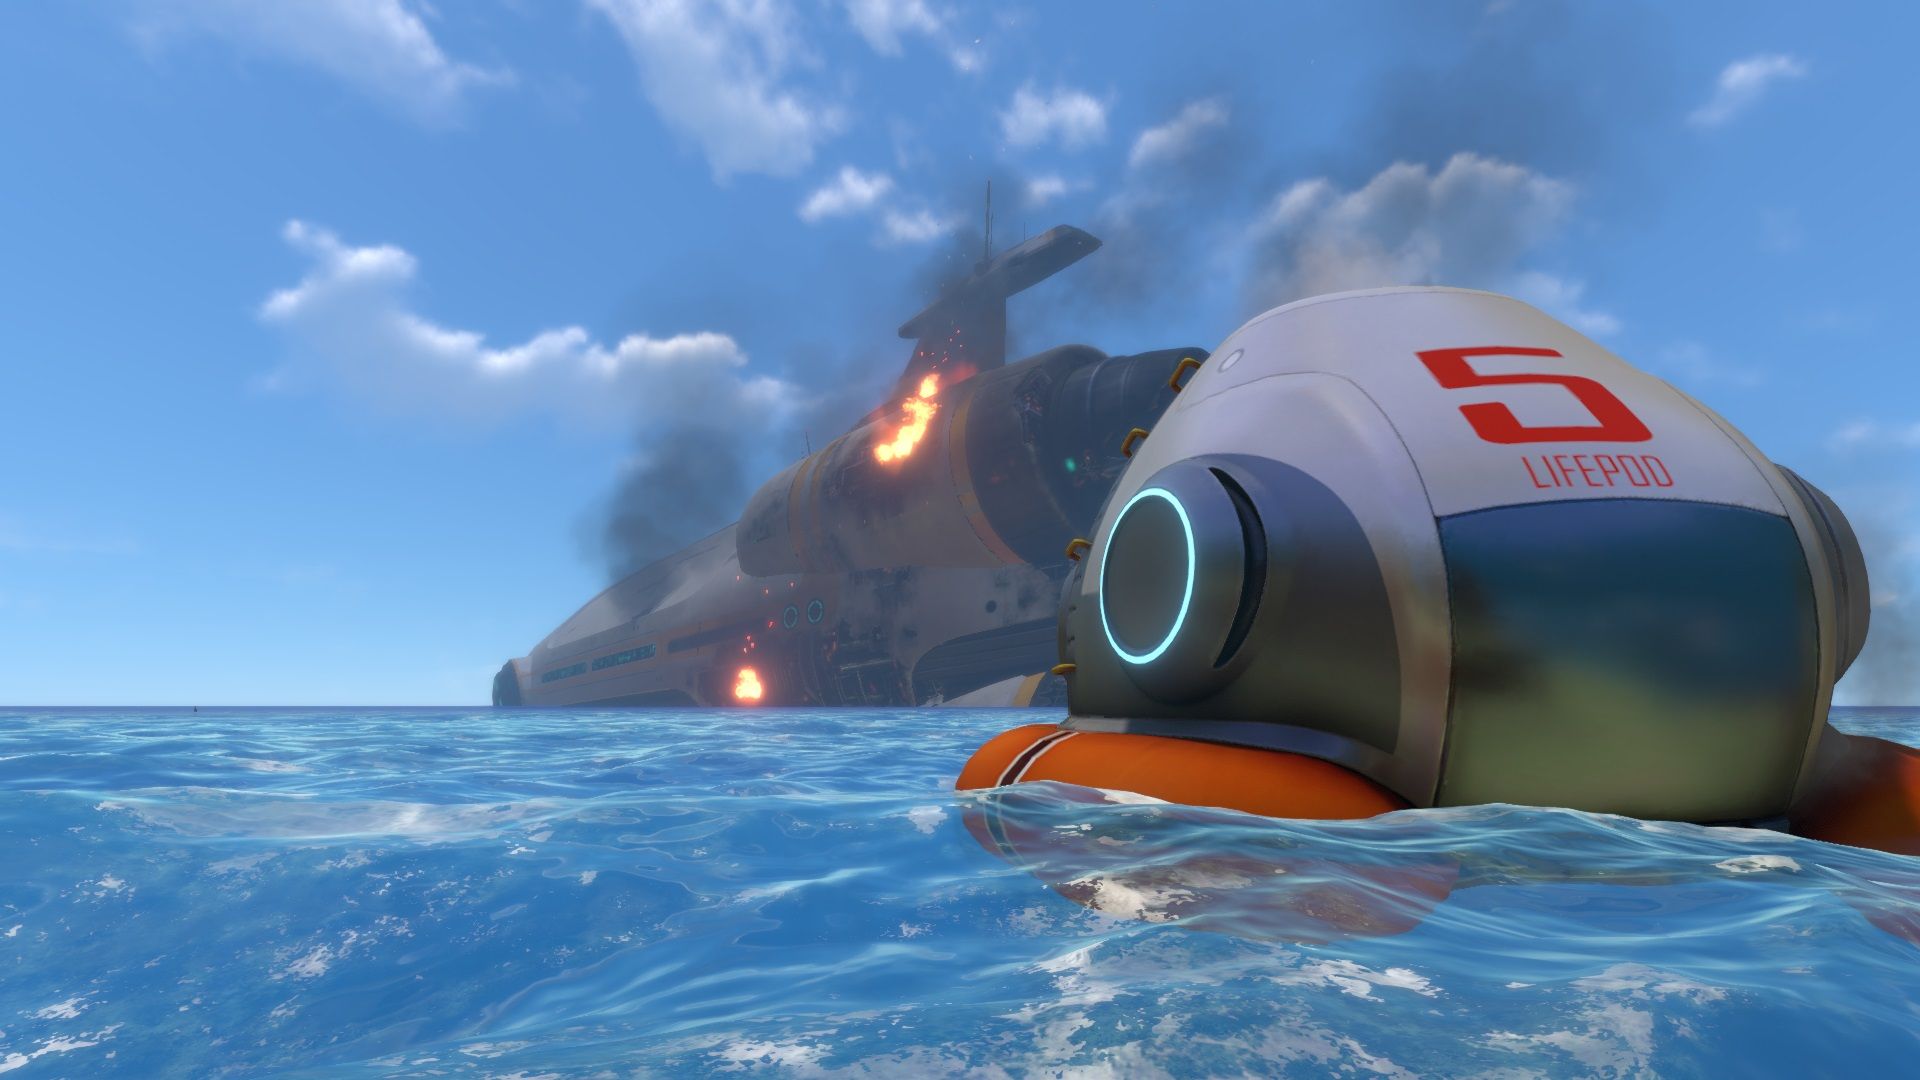 Subnautica start : un vaisseau spatial accidenté, et notre pod de survie flottent sur l'eau.